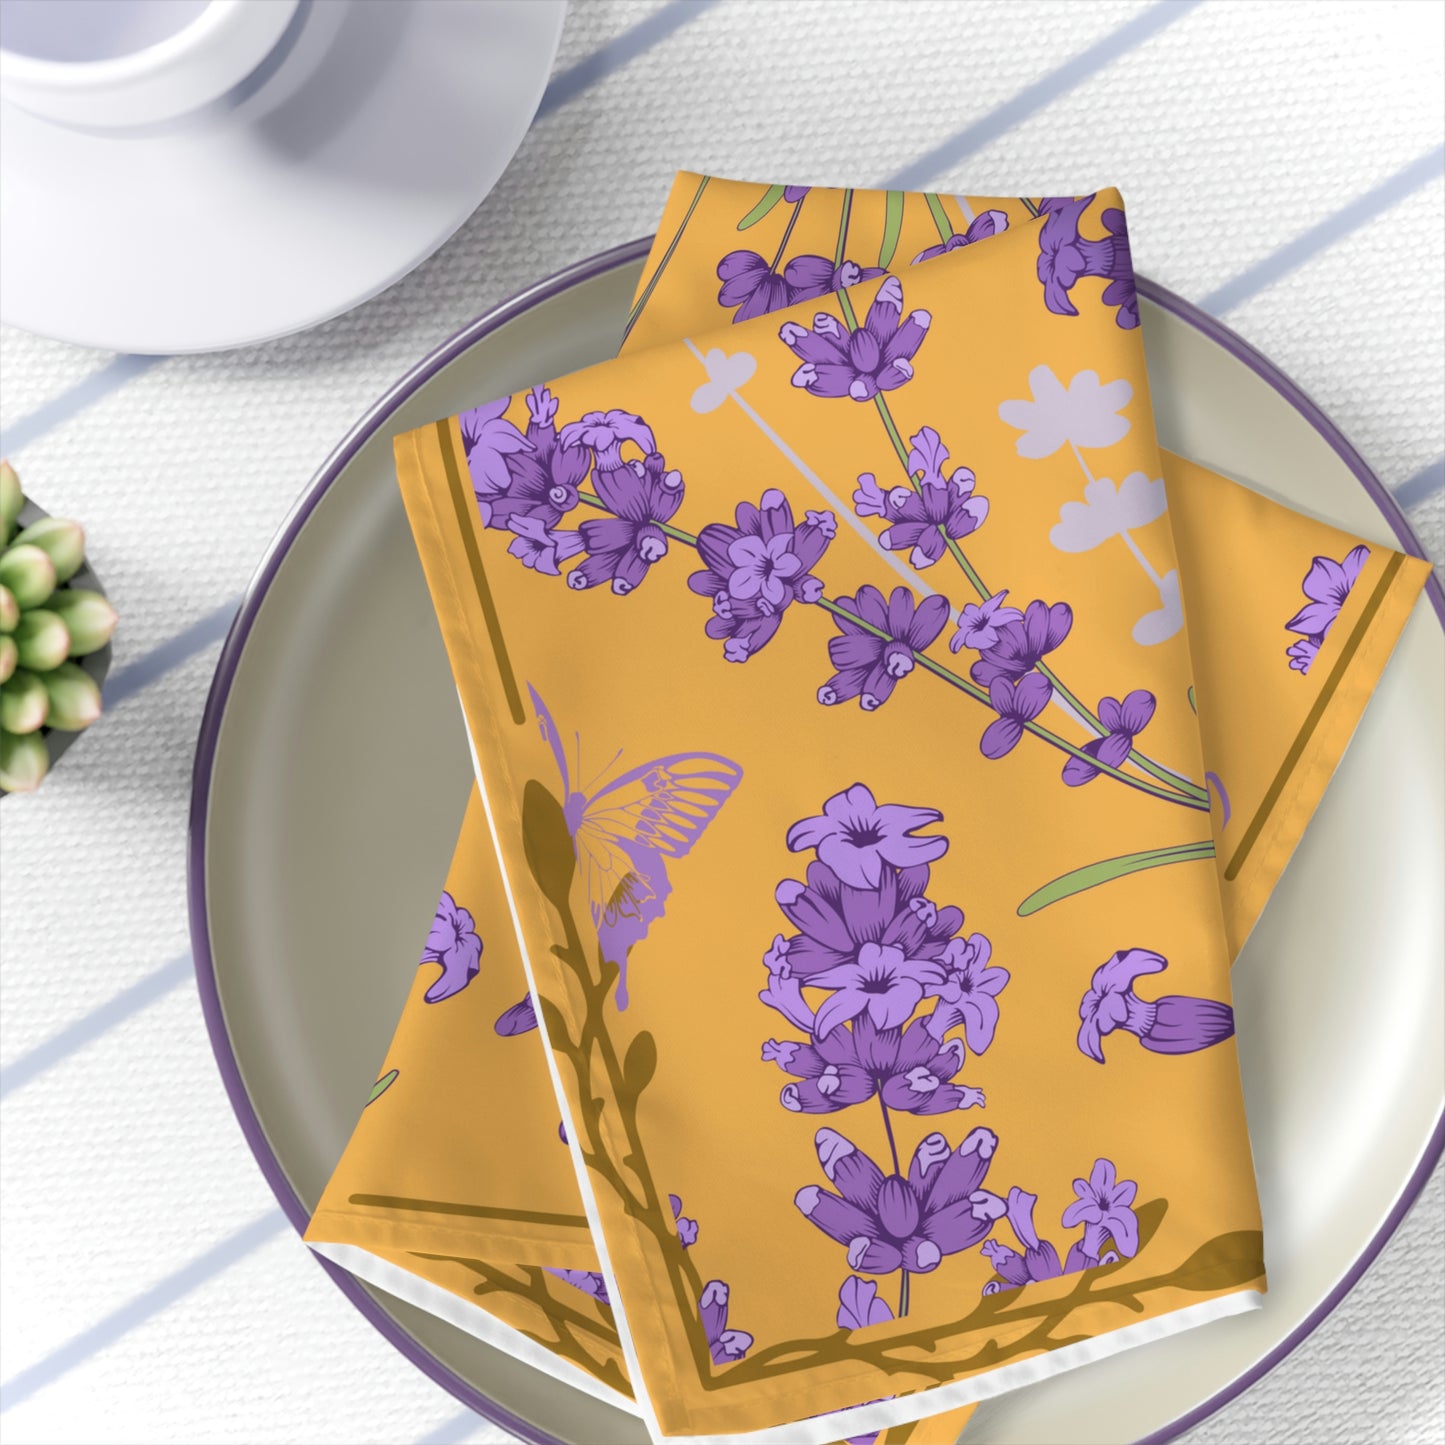 Floral Lavender 4-piece Kitchen Towel Set